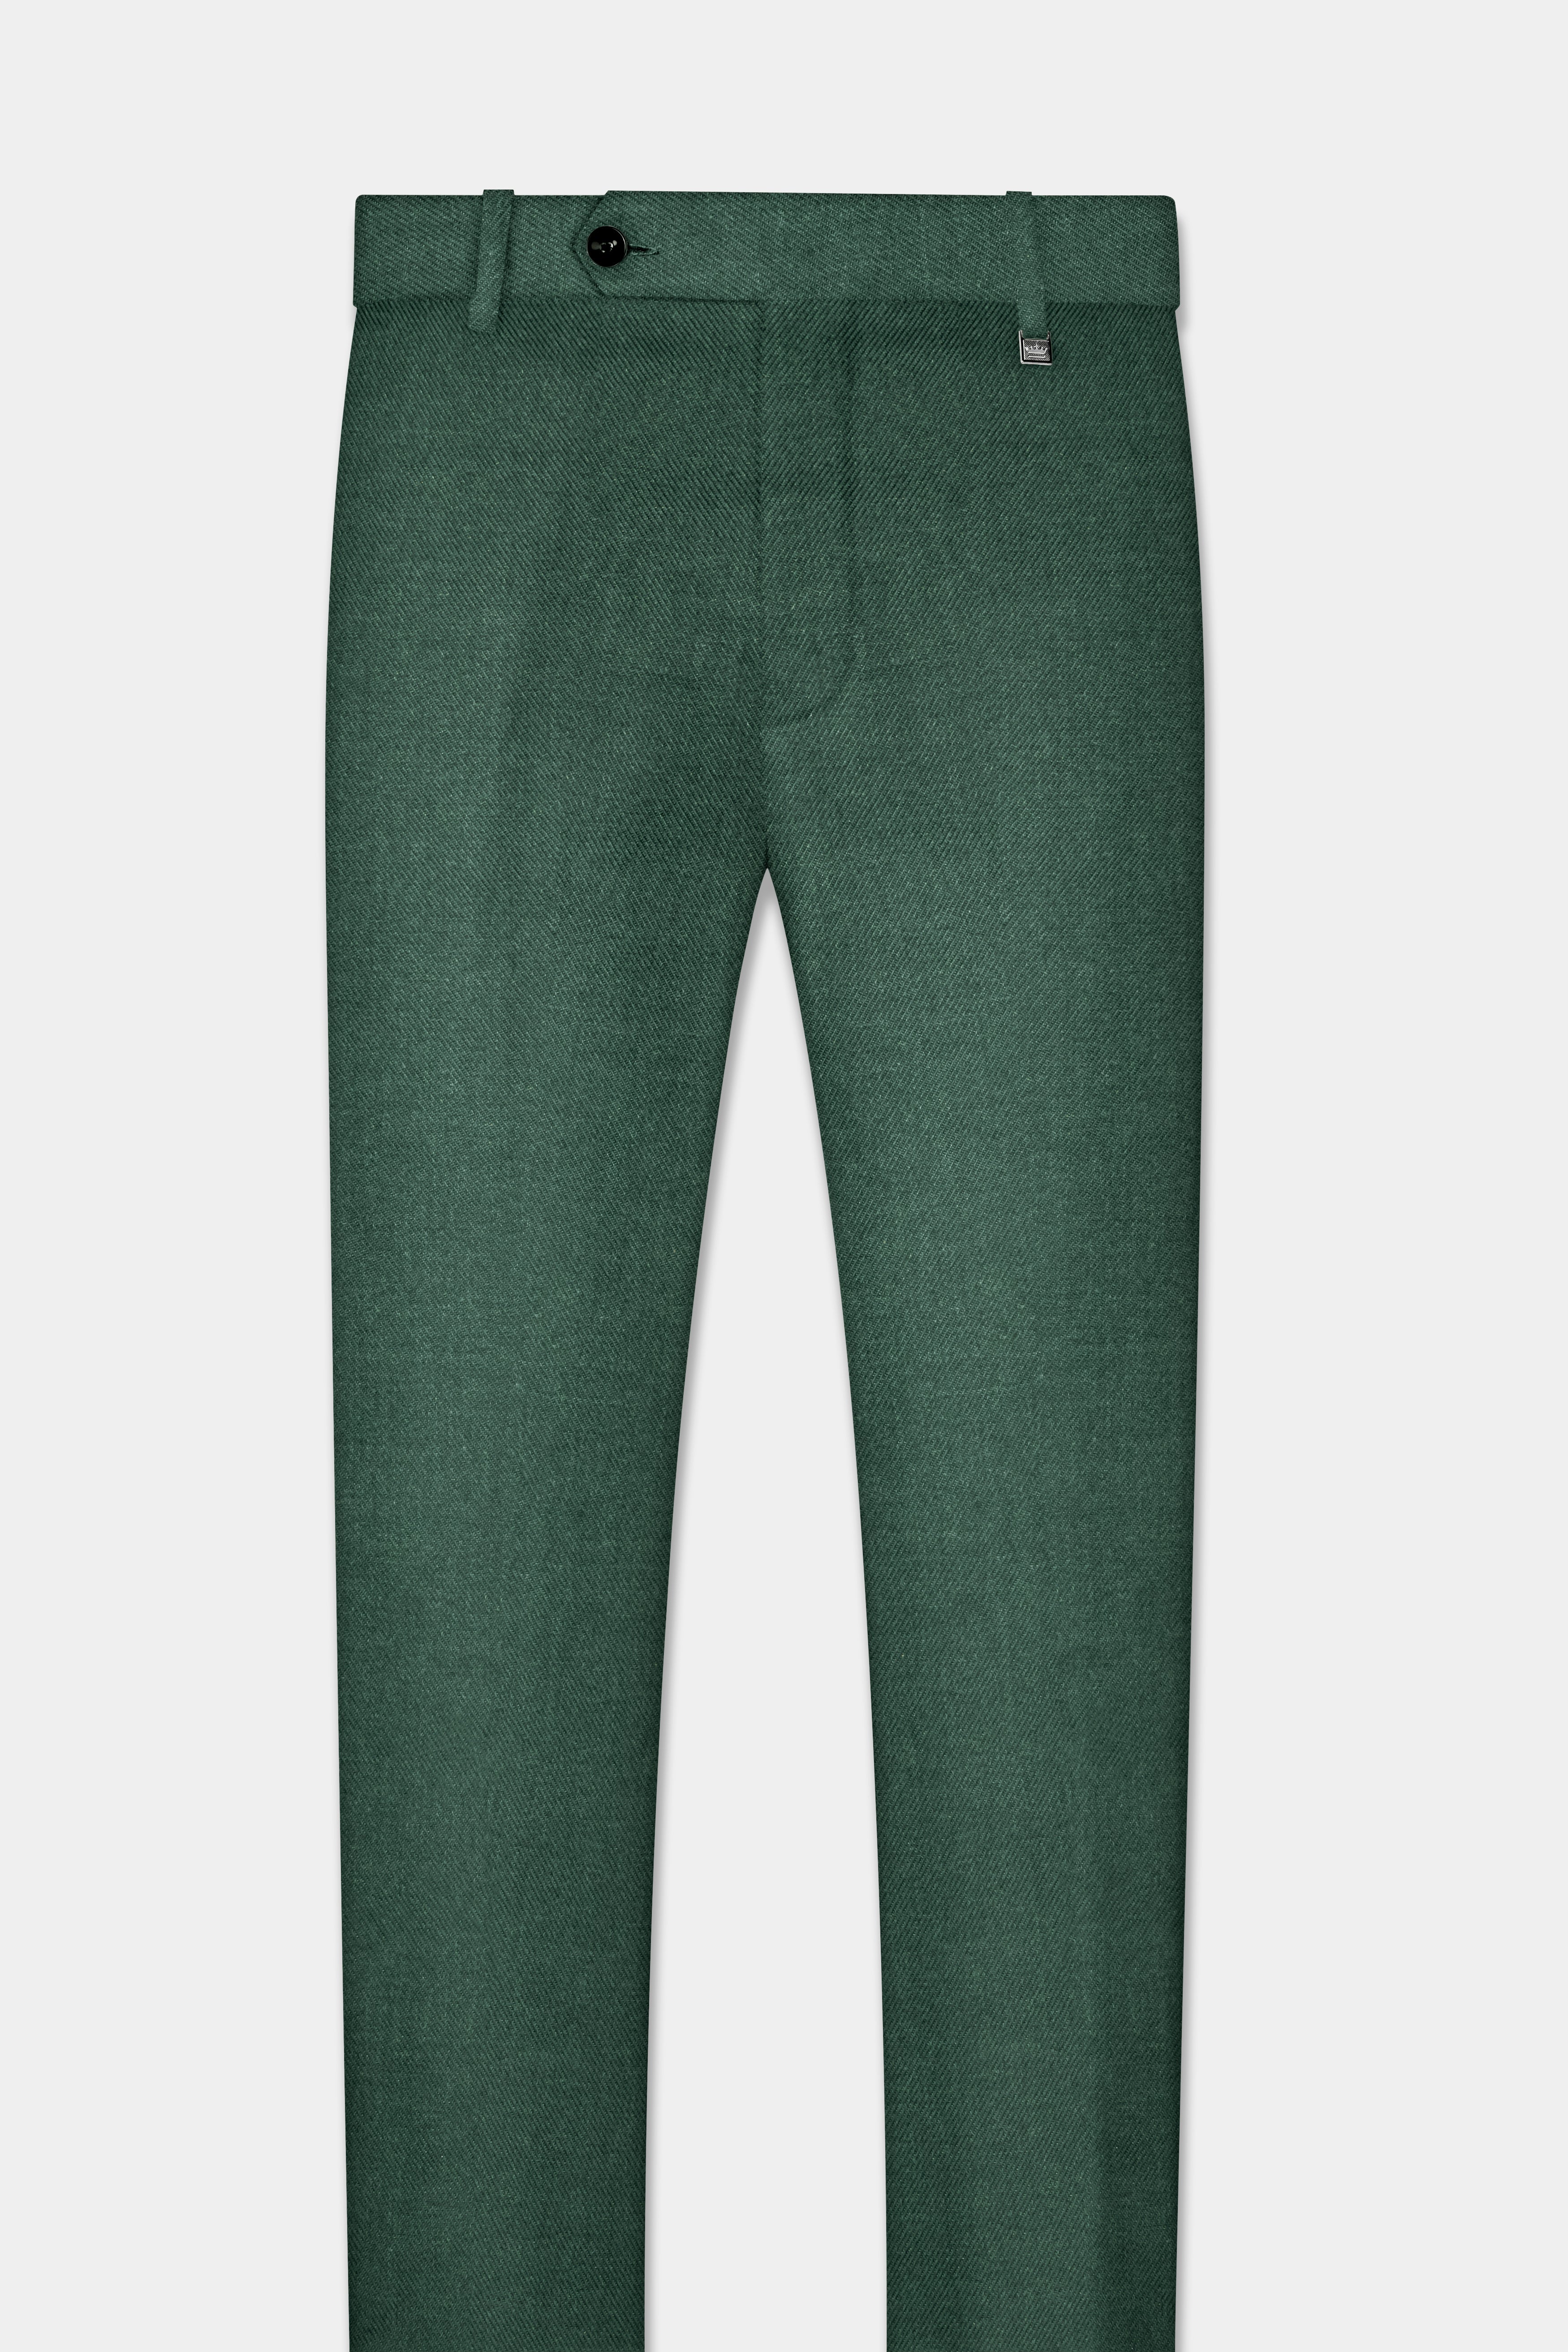 Plantation Green Tweed  Pant